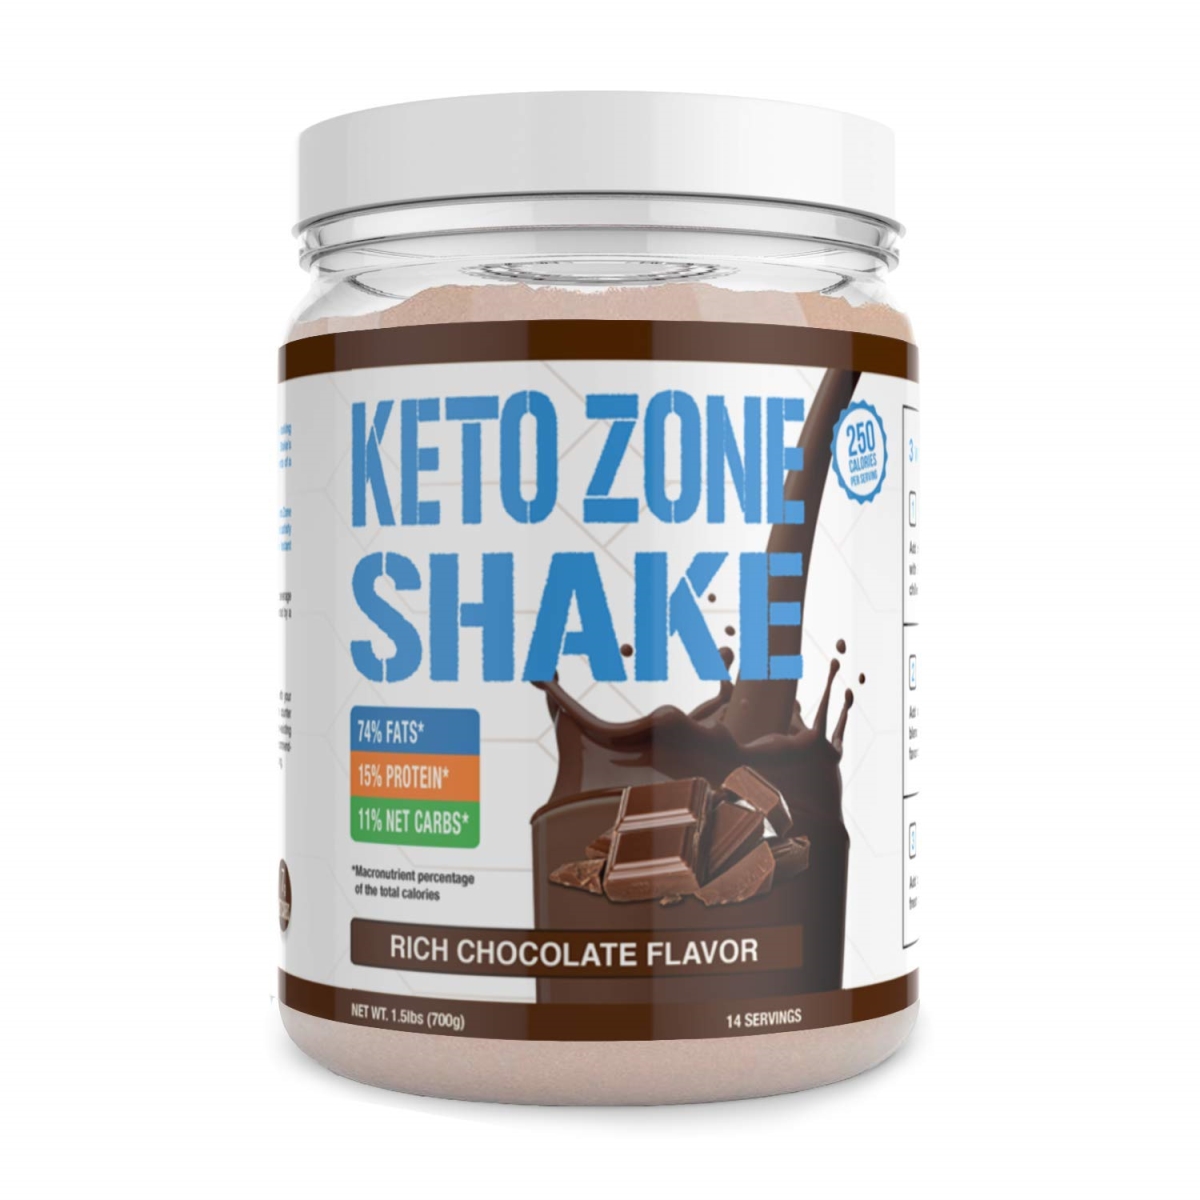 627817 700 Gm Keto Zone Shake Chocolate